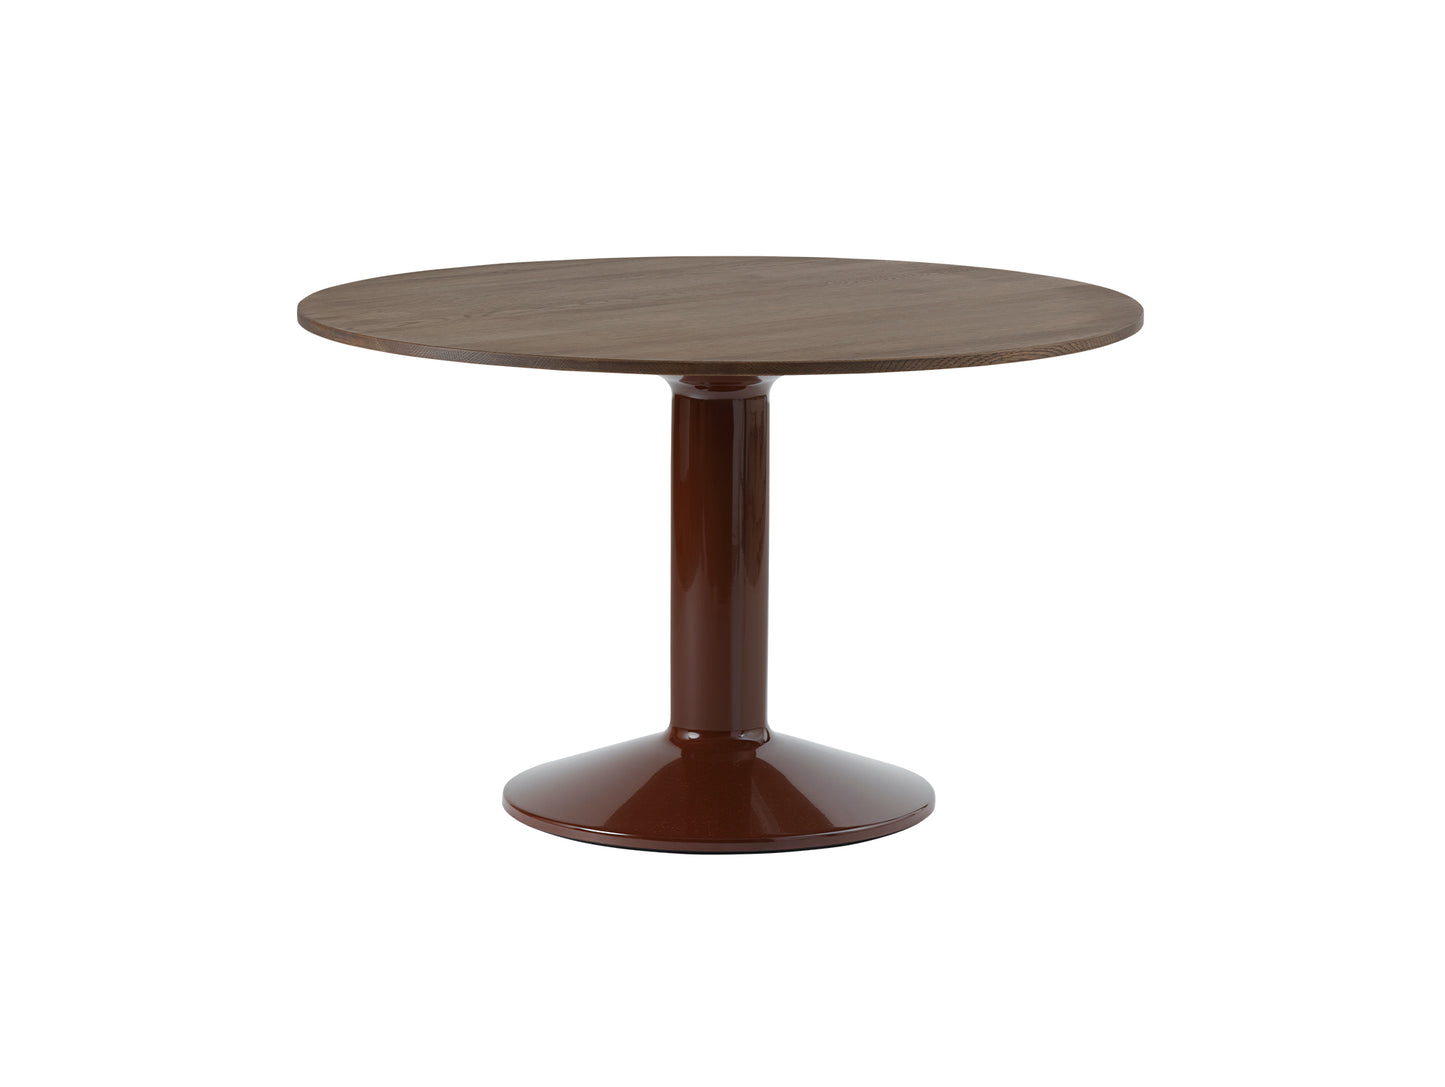 Midst Table by Muuto - Diameter: 120 cm / Dark Oiled Oak Tabletop with Dark Red Steel Base